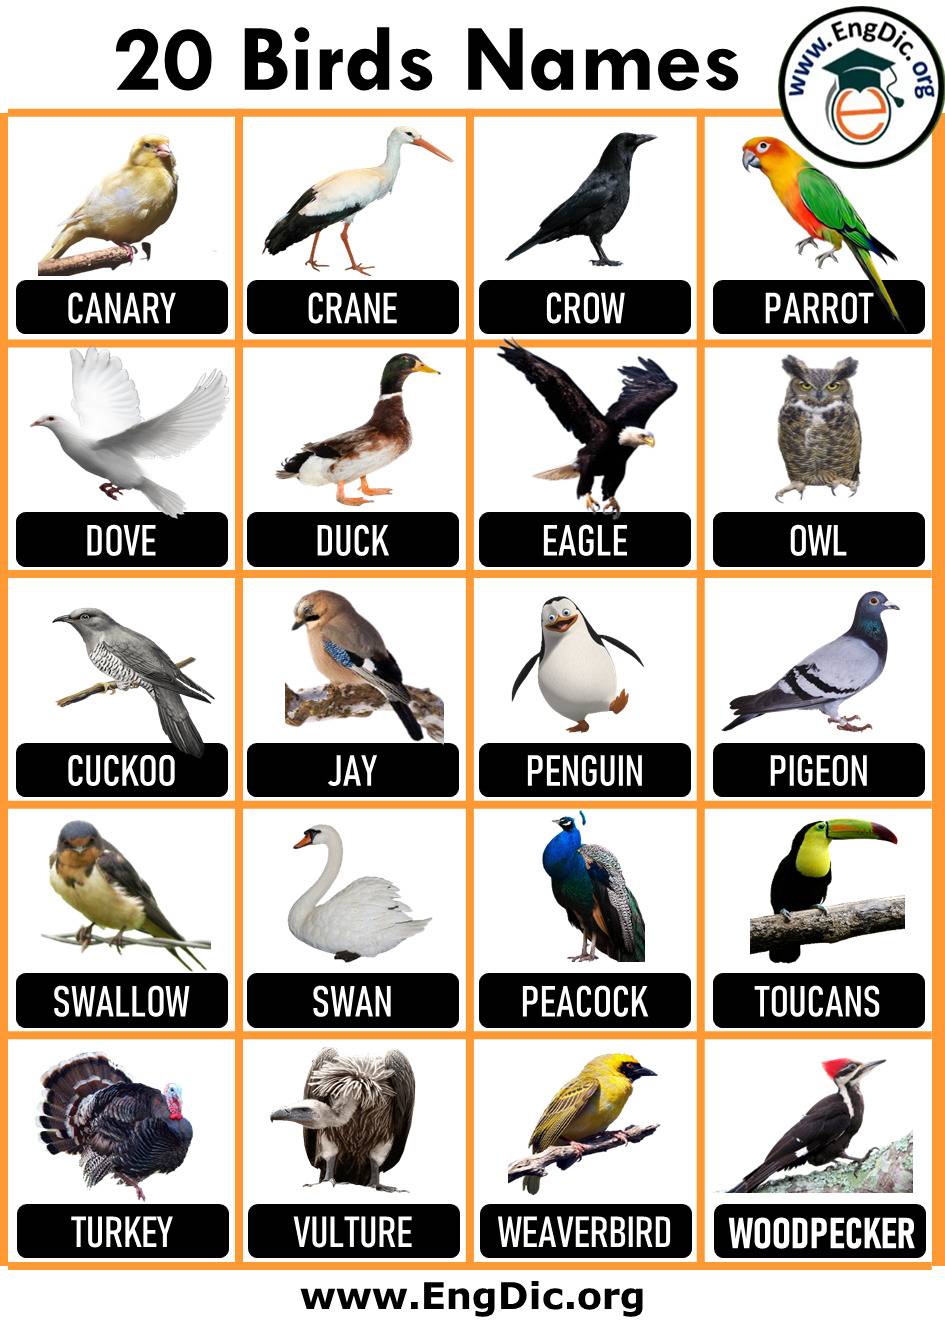 20 bird names